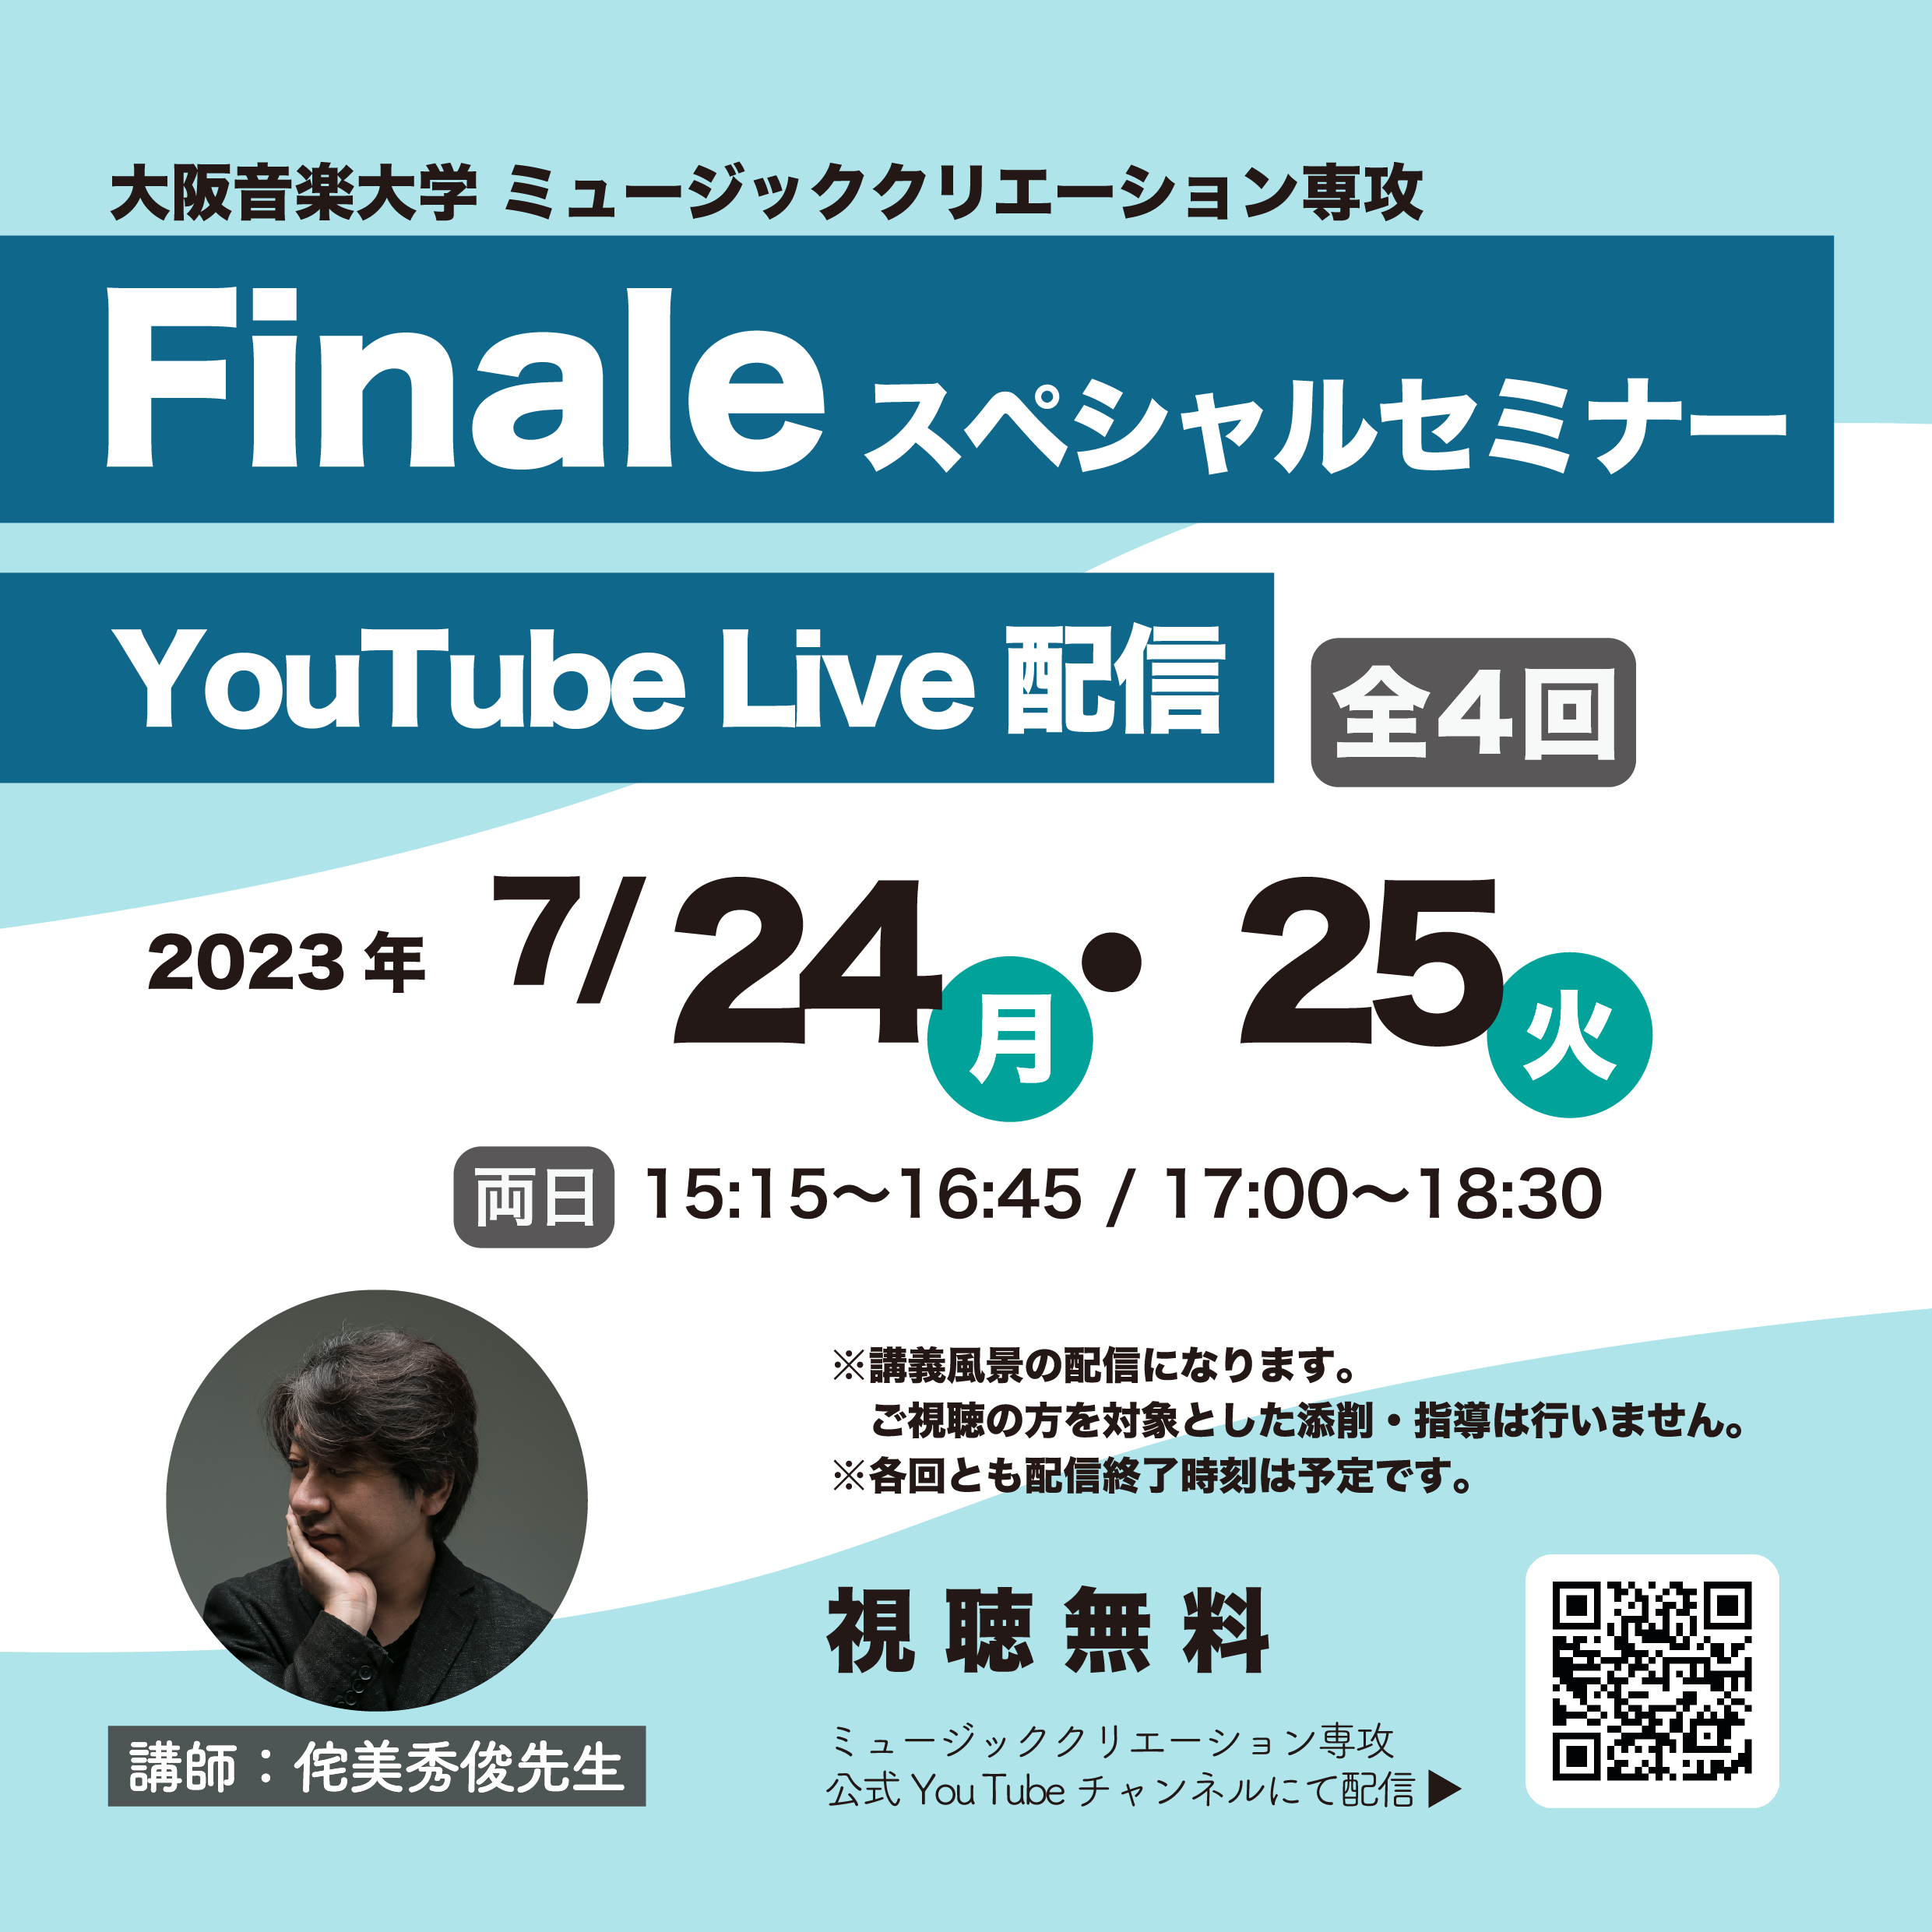 大阪音楽大学 ミュージッククリエーション専攻 × Finaleスペシャルセミナー YouTube Live配信